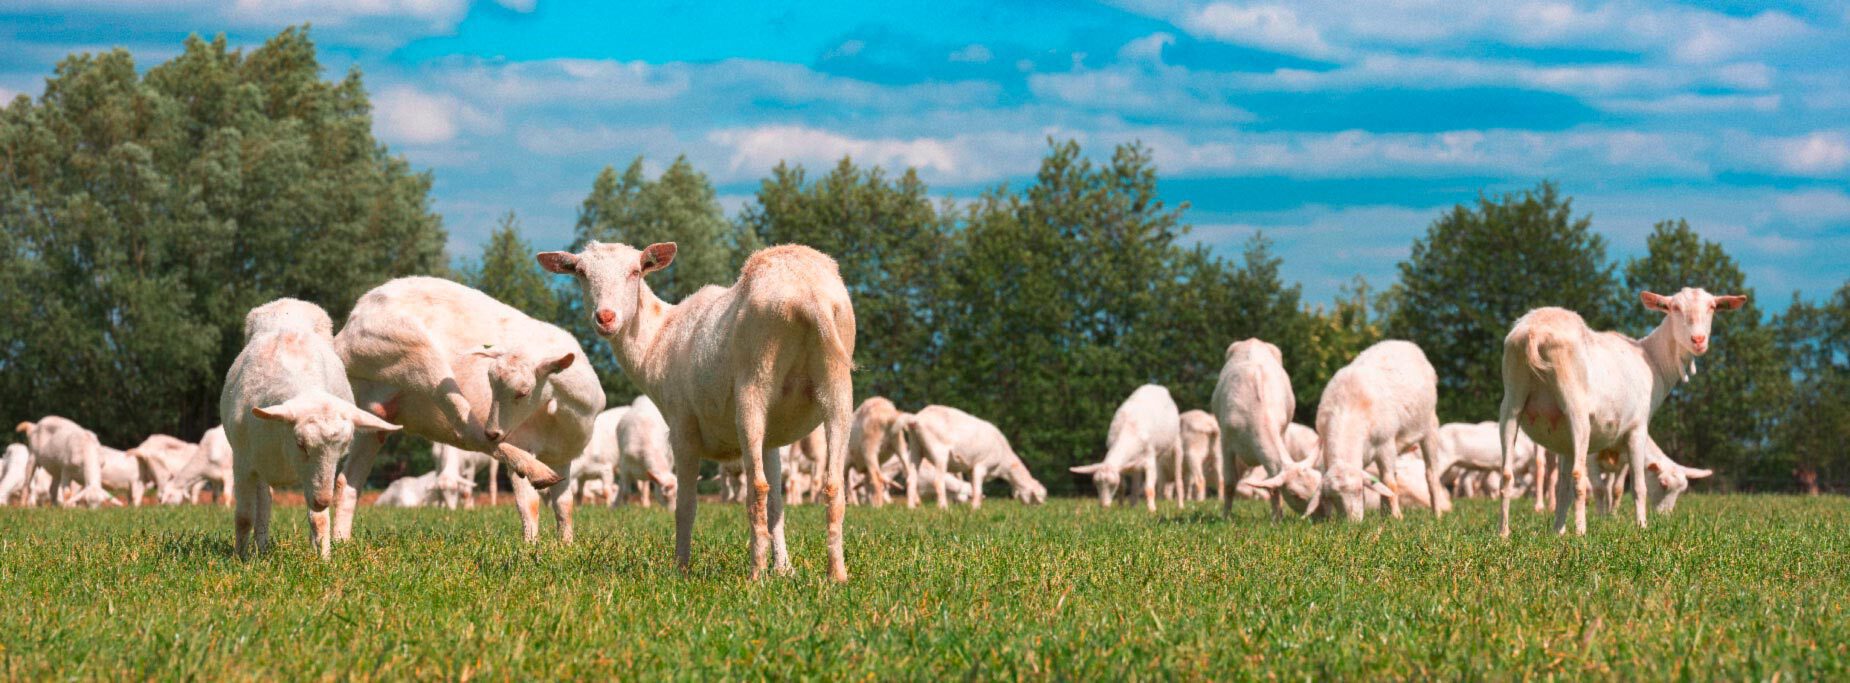 Quelle clôture électrique choisir pour l'élevage des chèvres ?